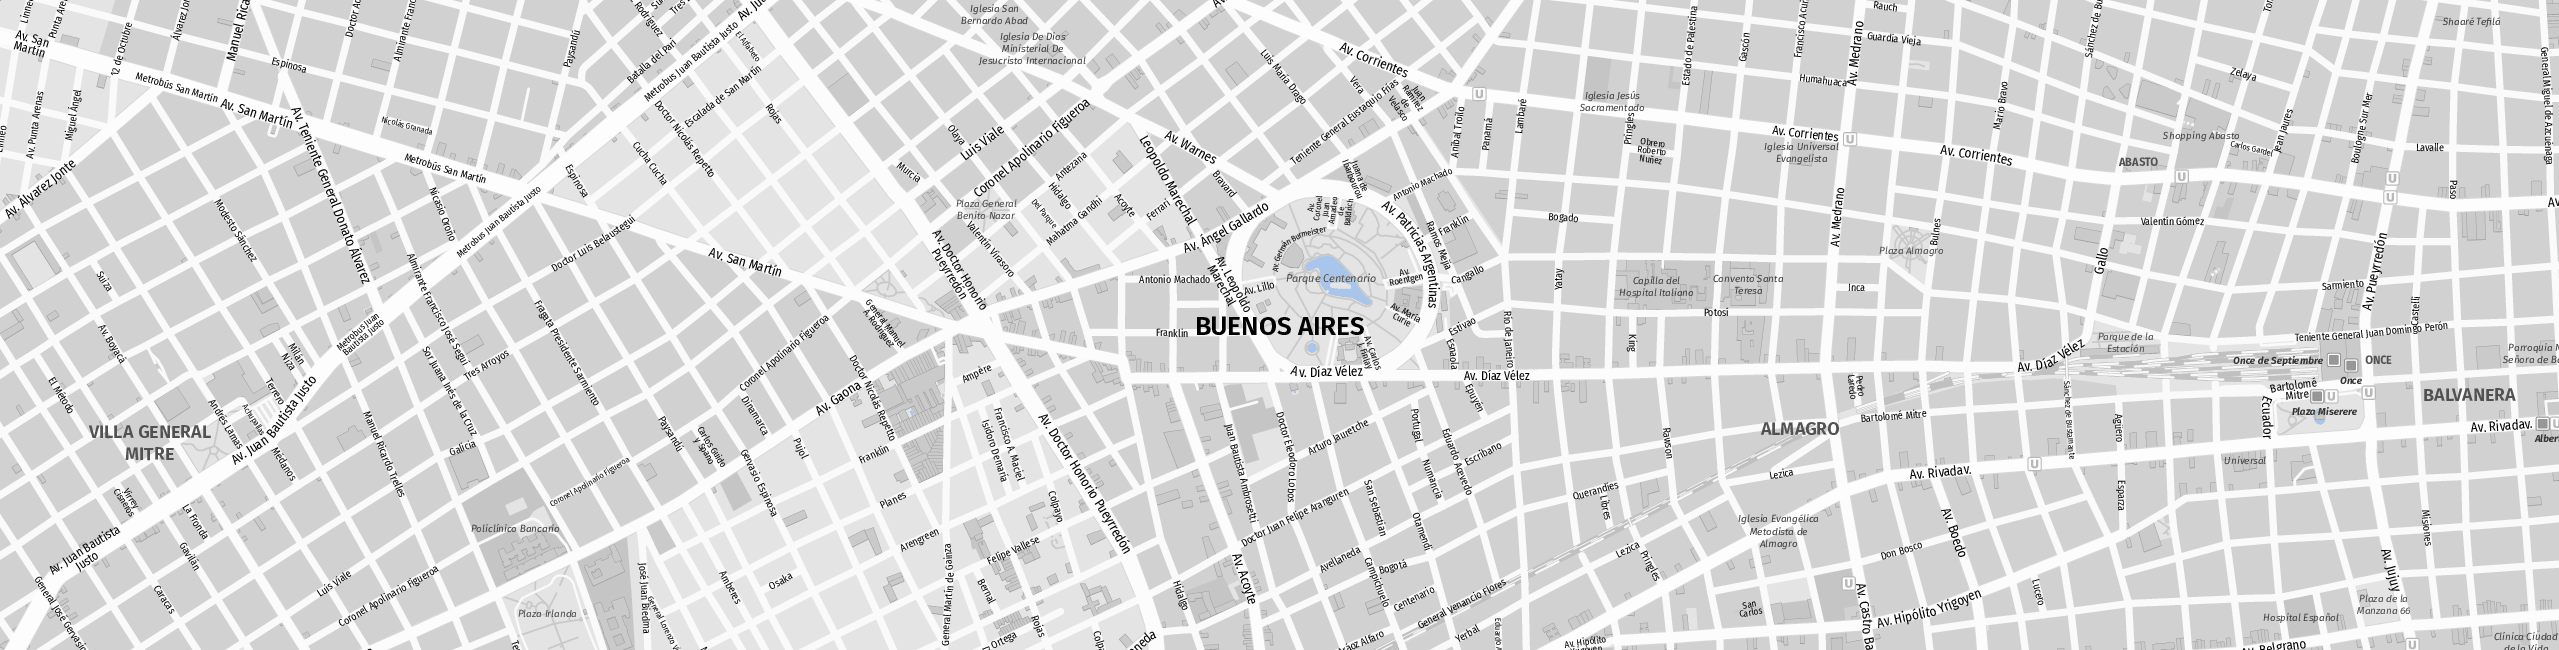 Stadtplan Buenos Aires zum Downloaden.